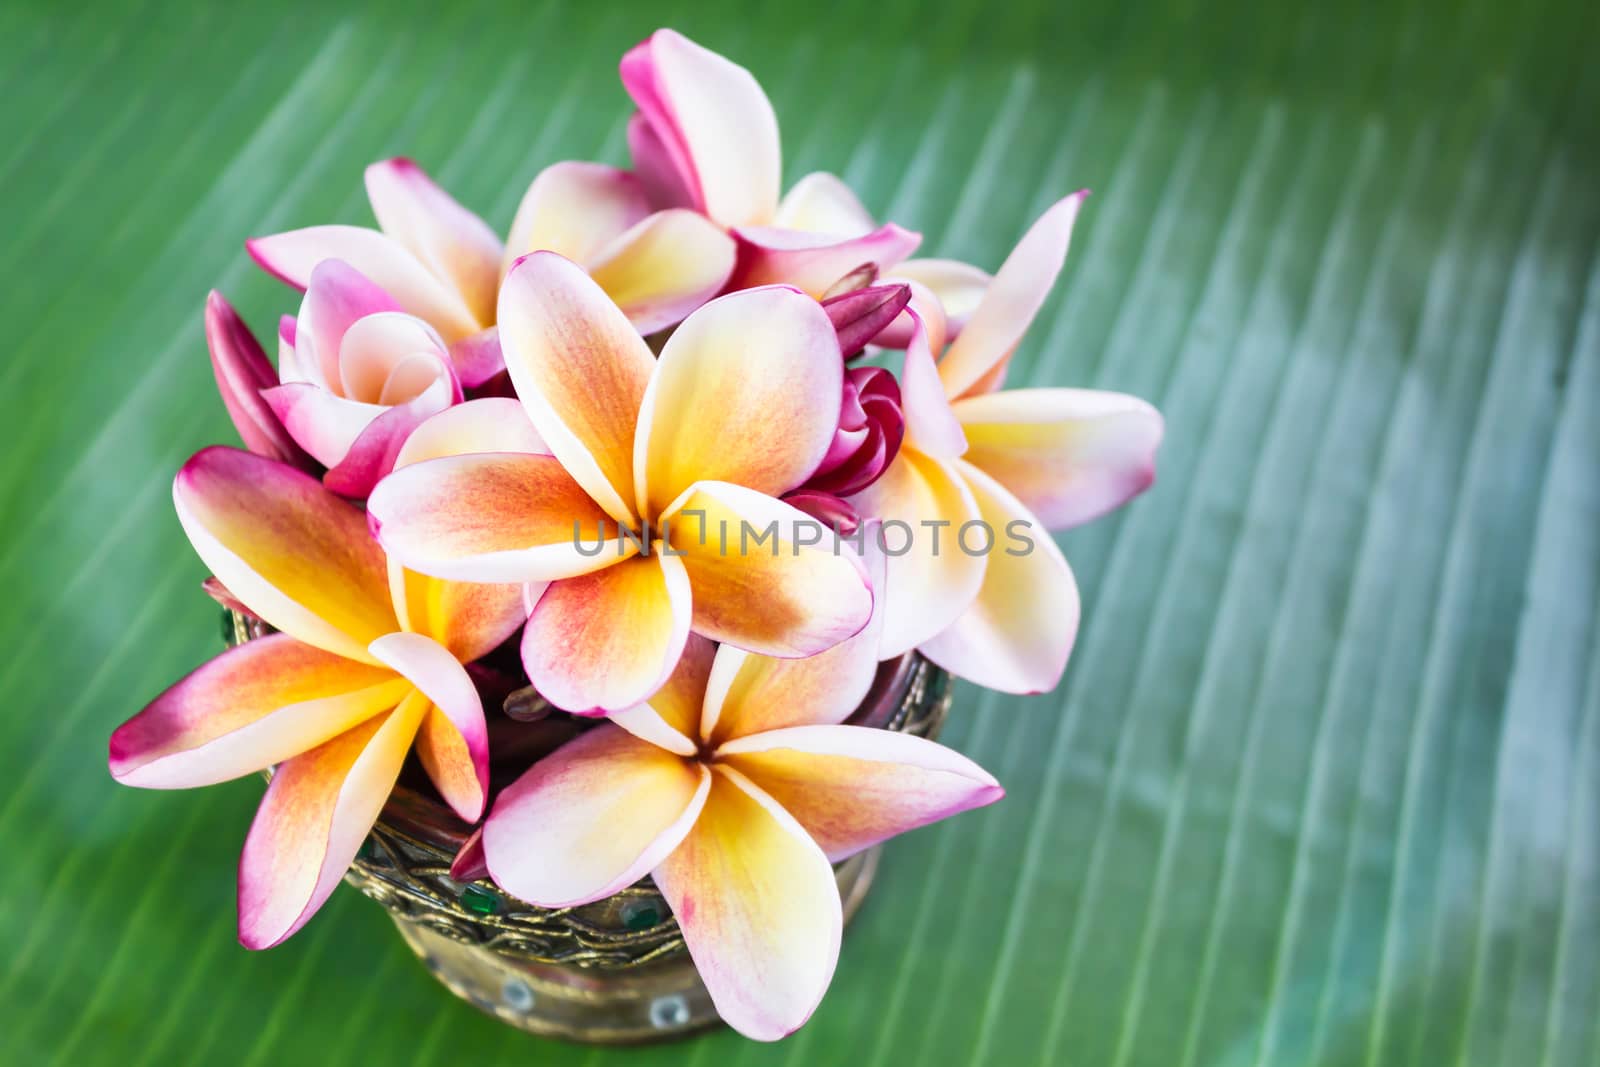 Beautiful flower plumeria or frangipani on fresh banana green leaf